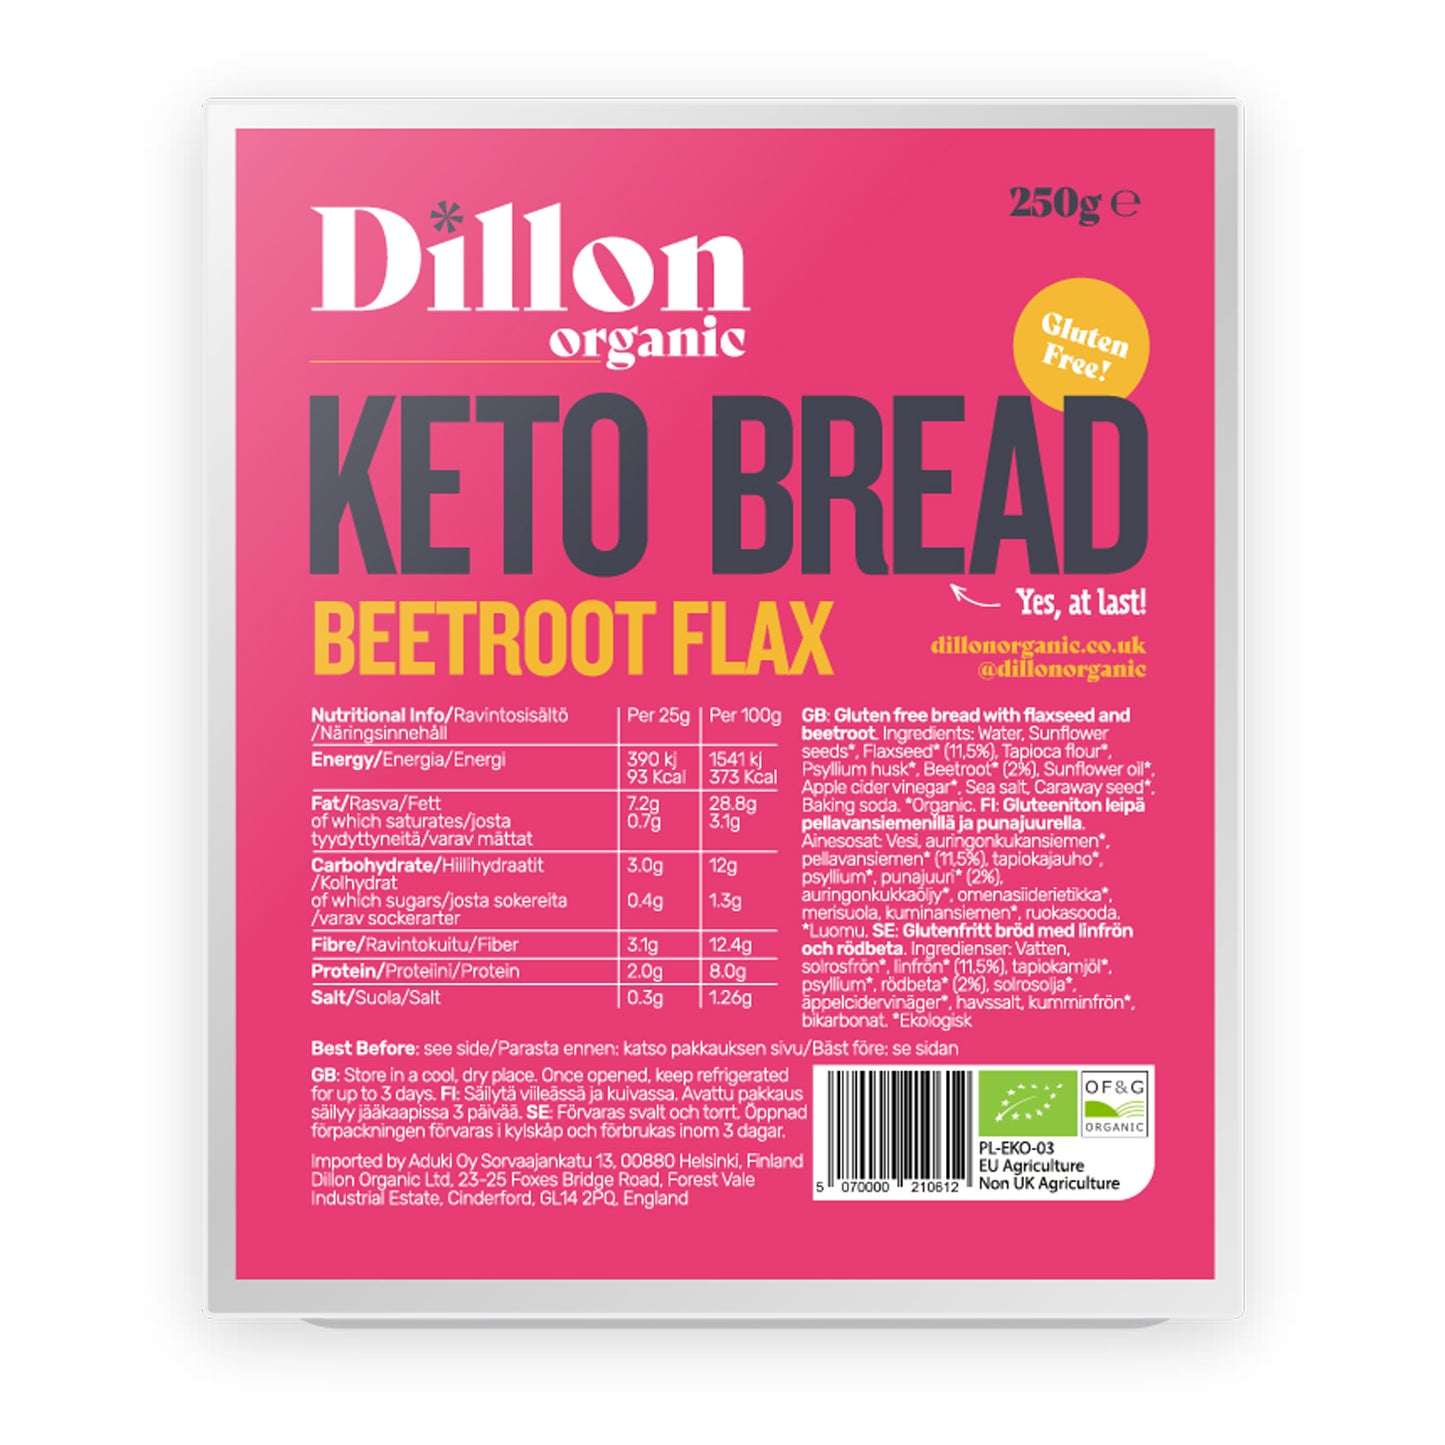 Beetroot Flax Keto Bread 250g